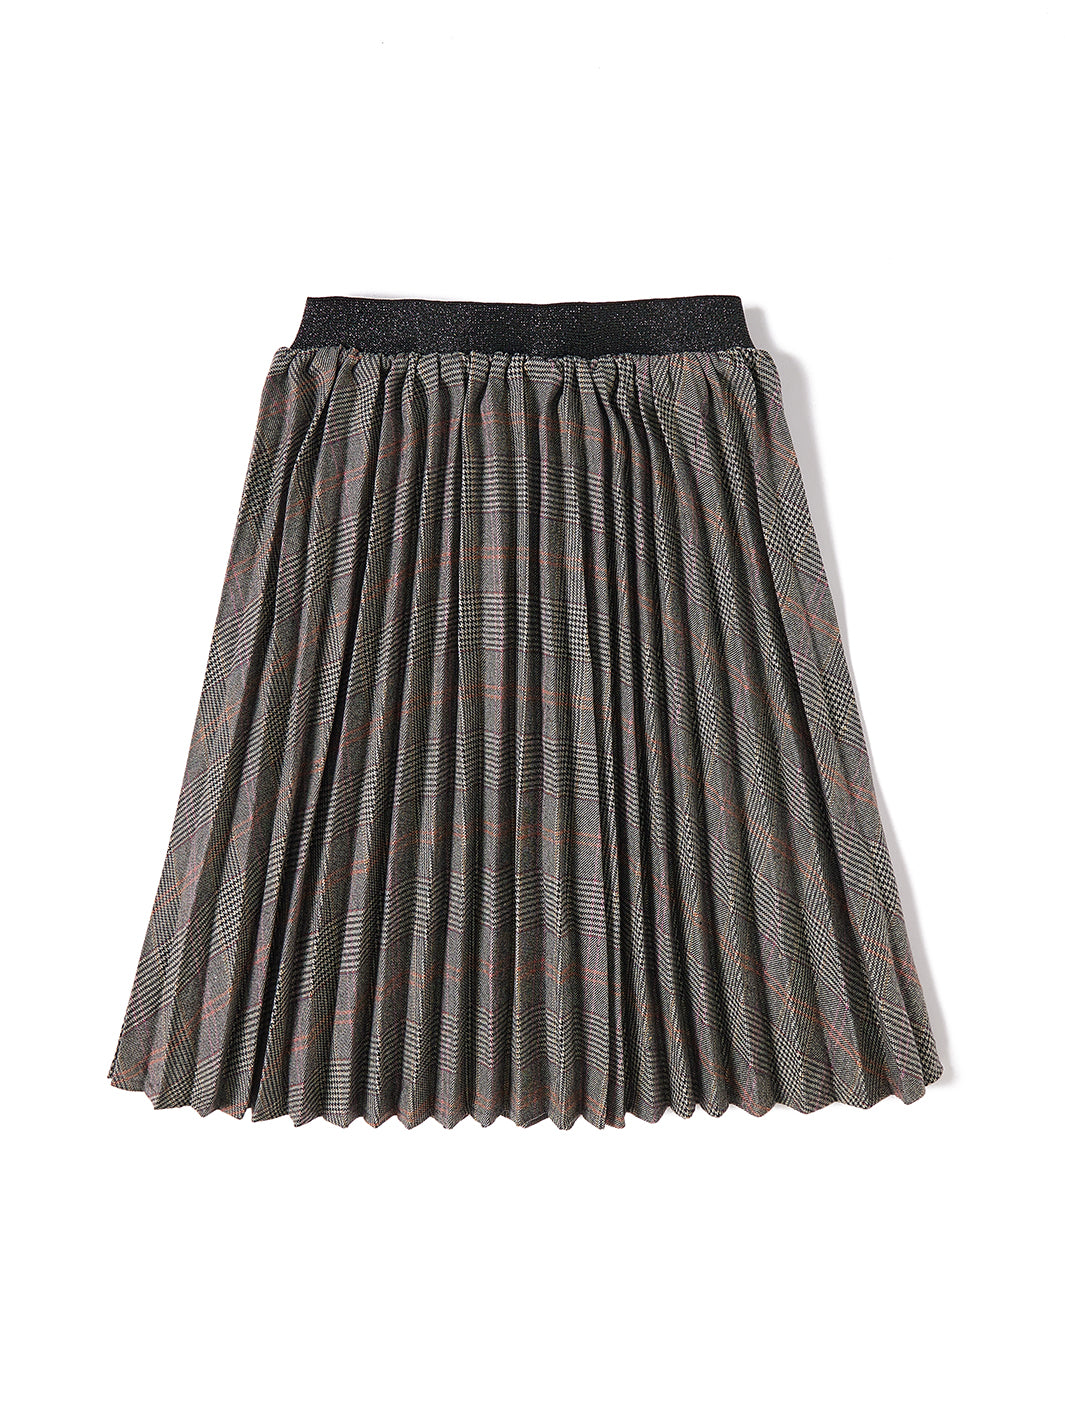 Plaid Accordion Pleated Skirt